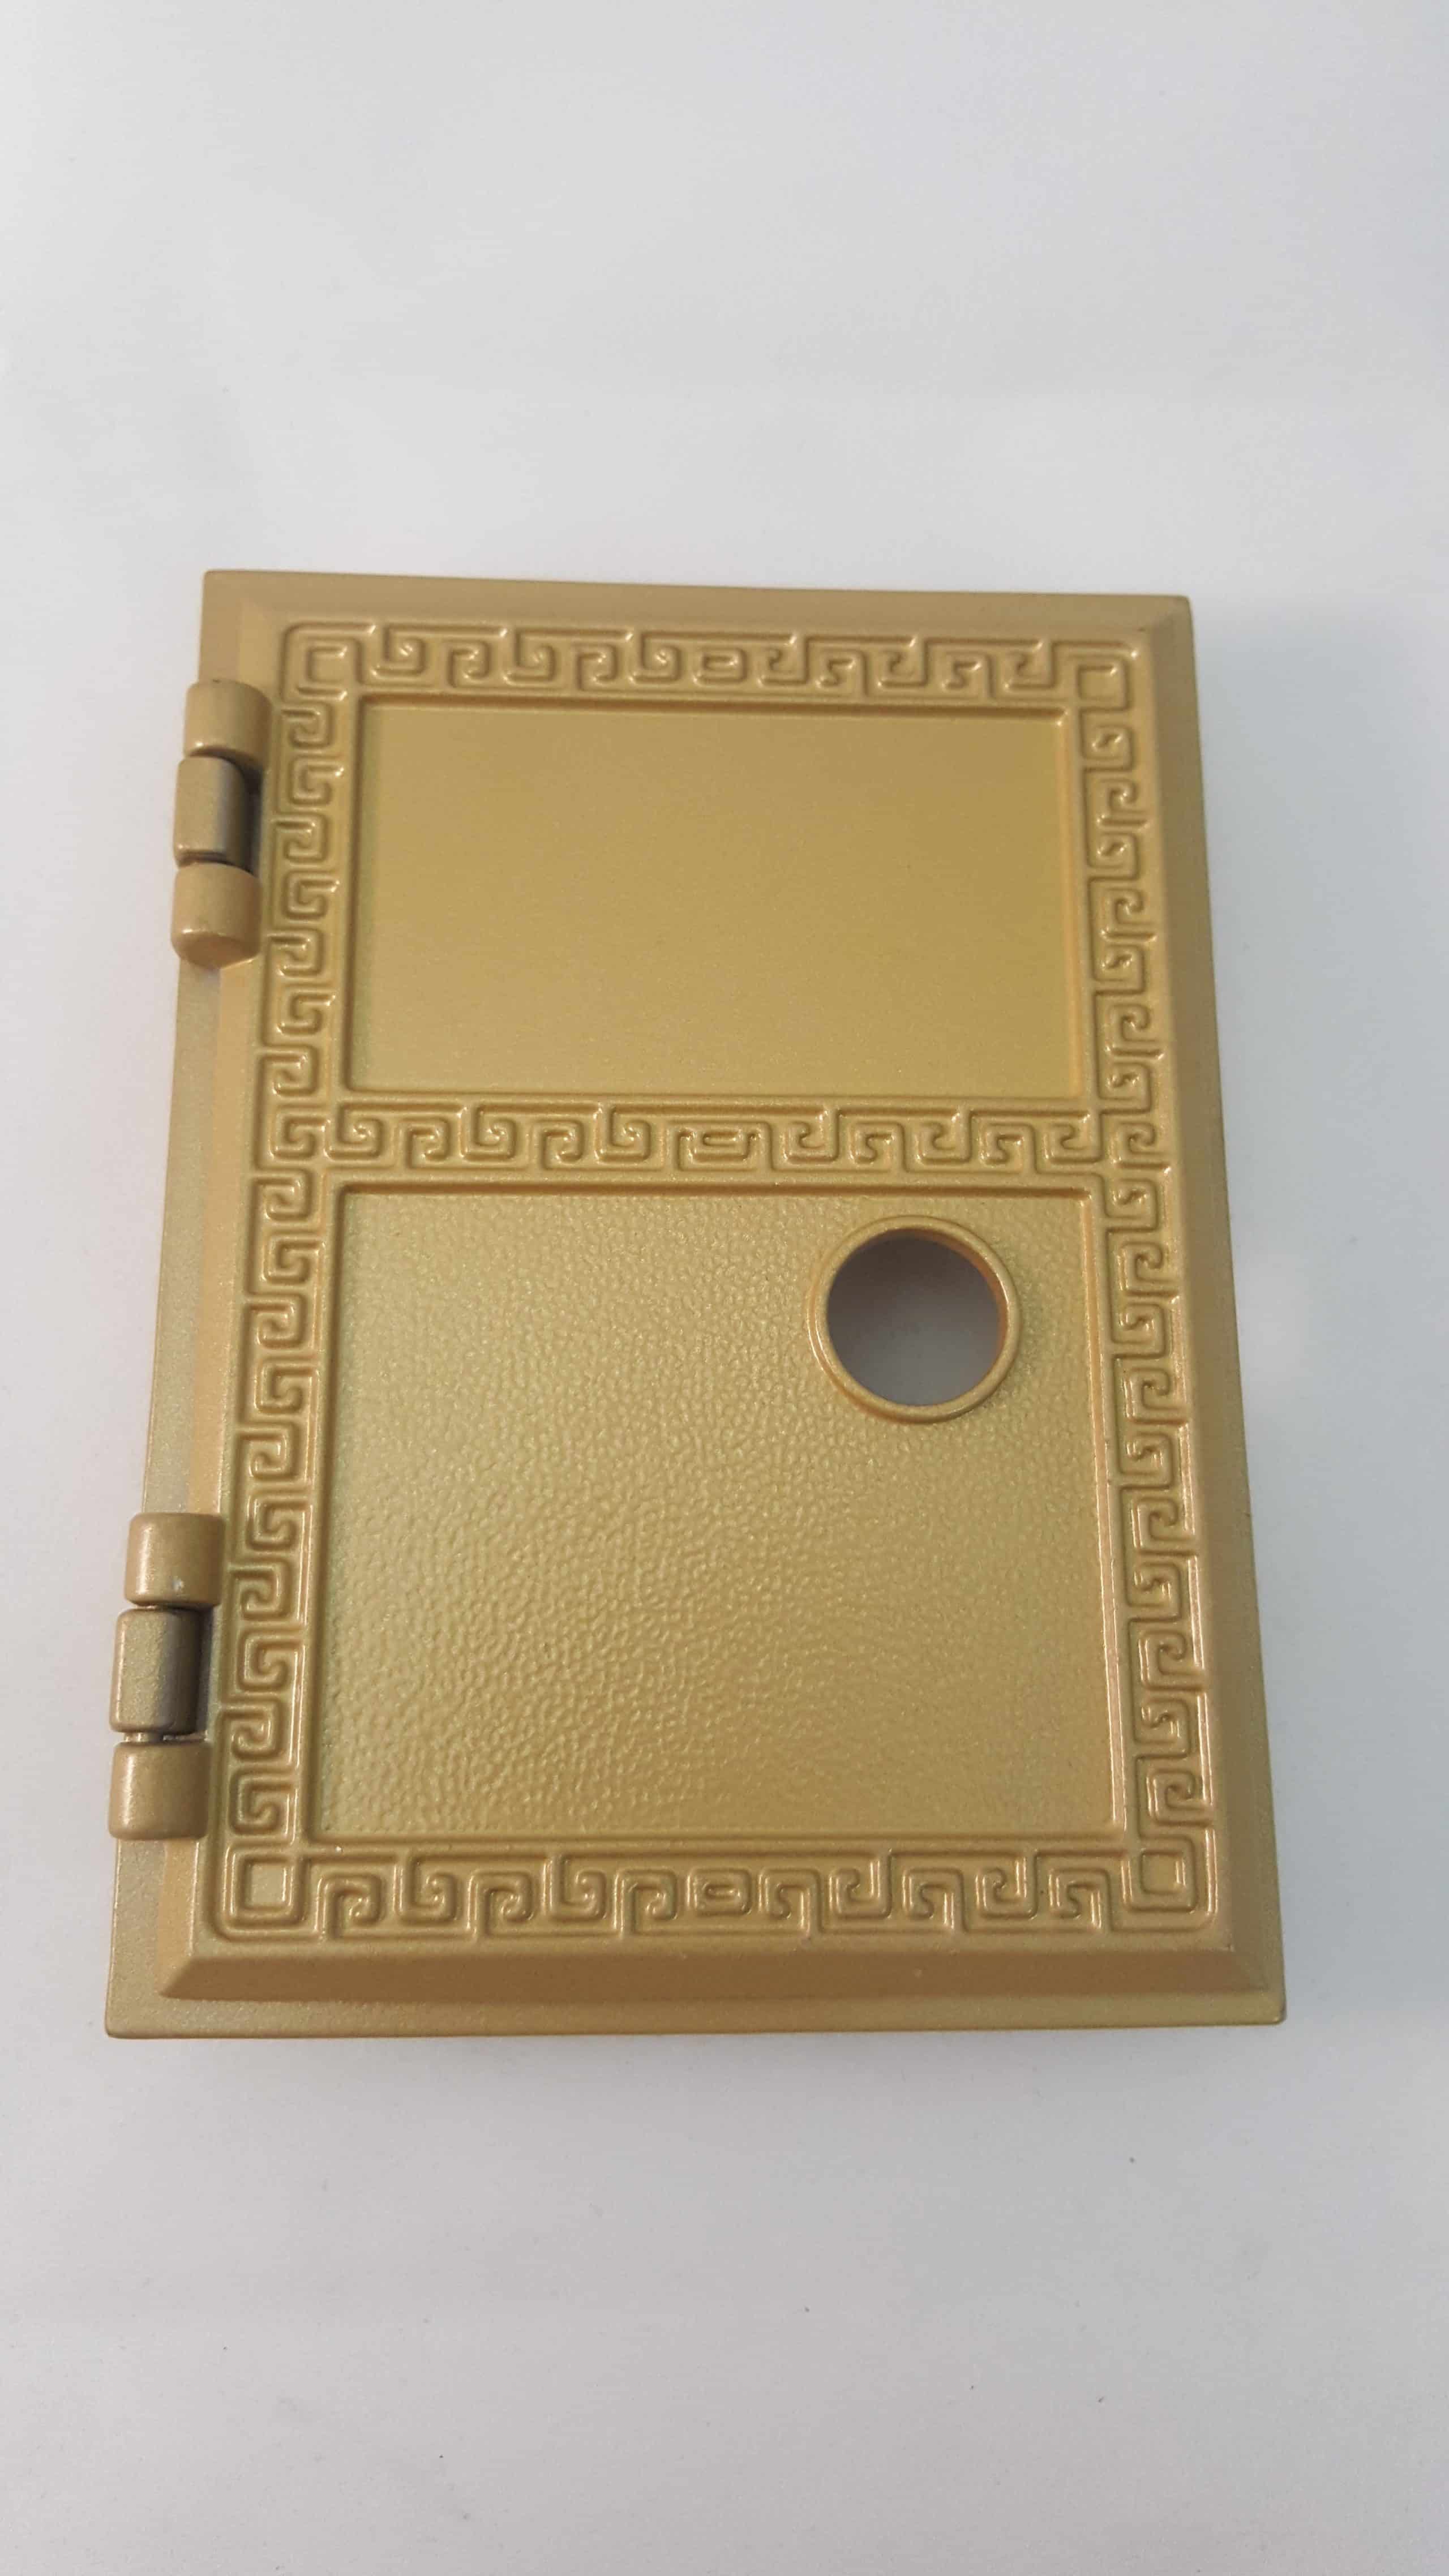 American Locker company's gold platted door